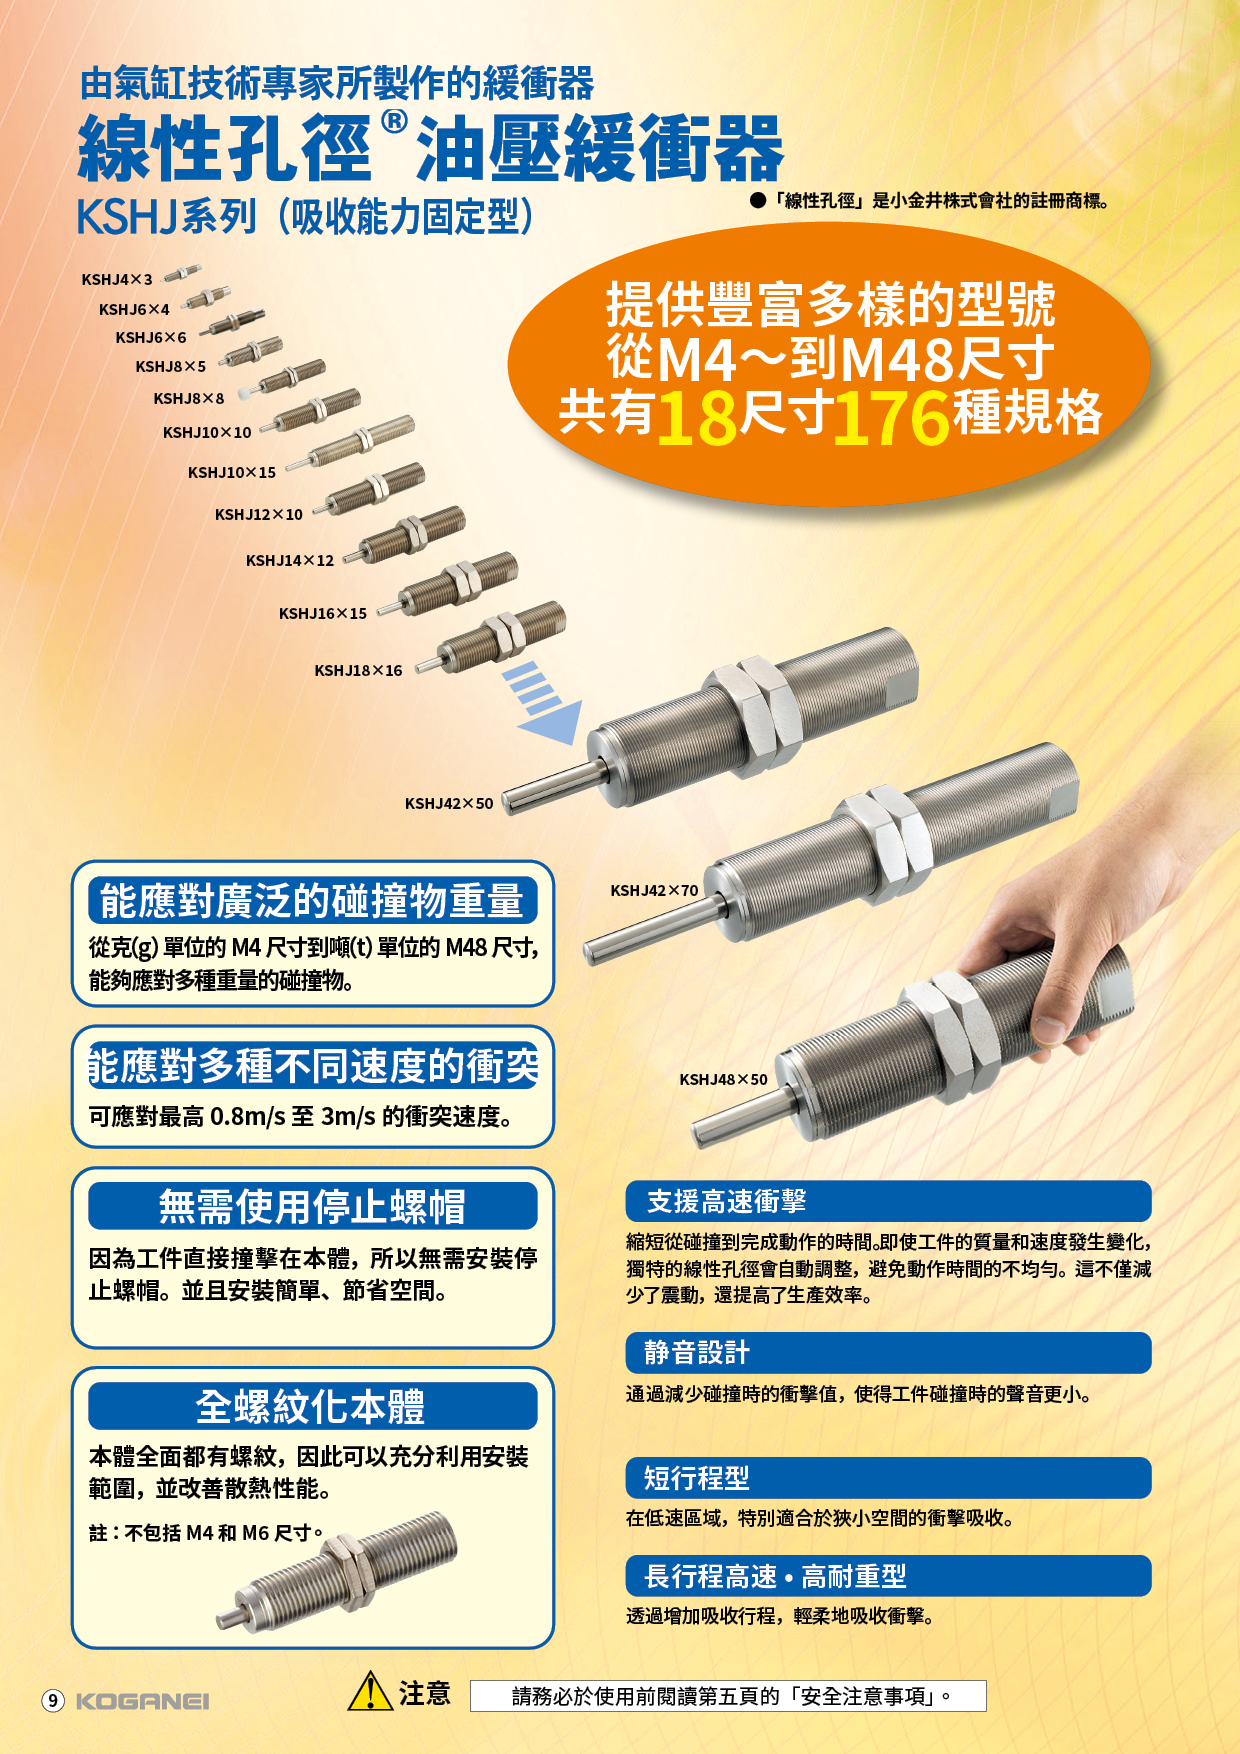 線性孔徑油壓緩衝器(KSHJ)-產品特色2